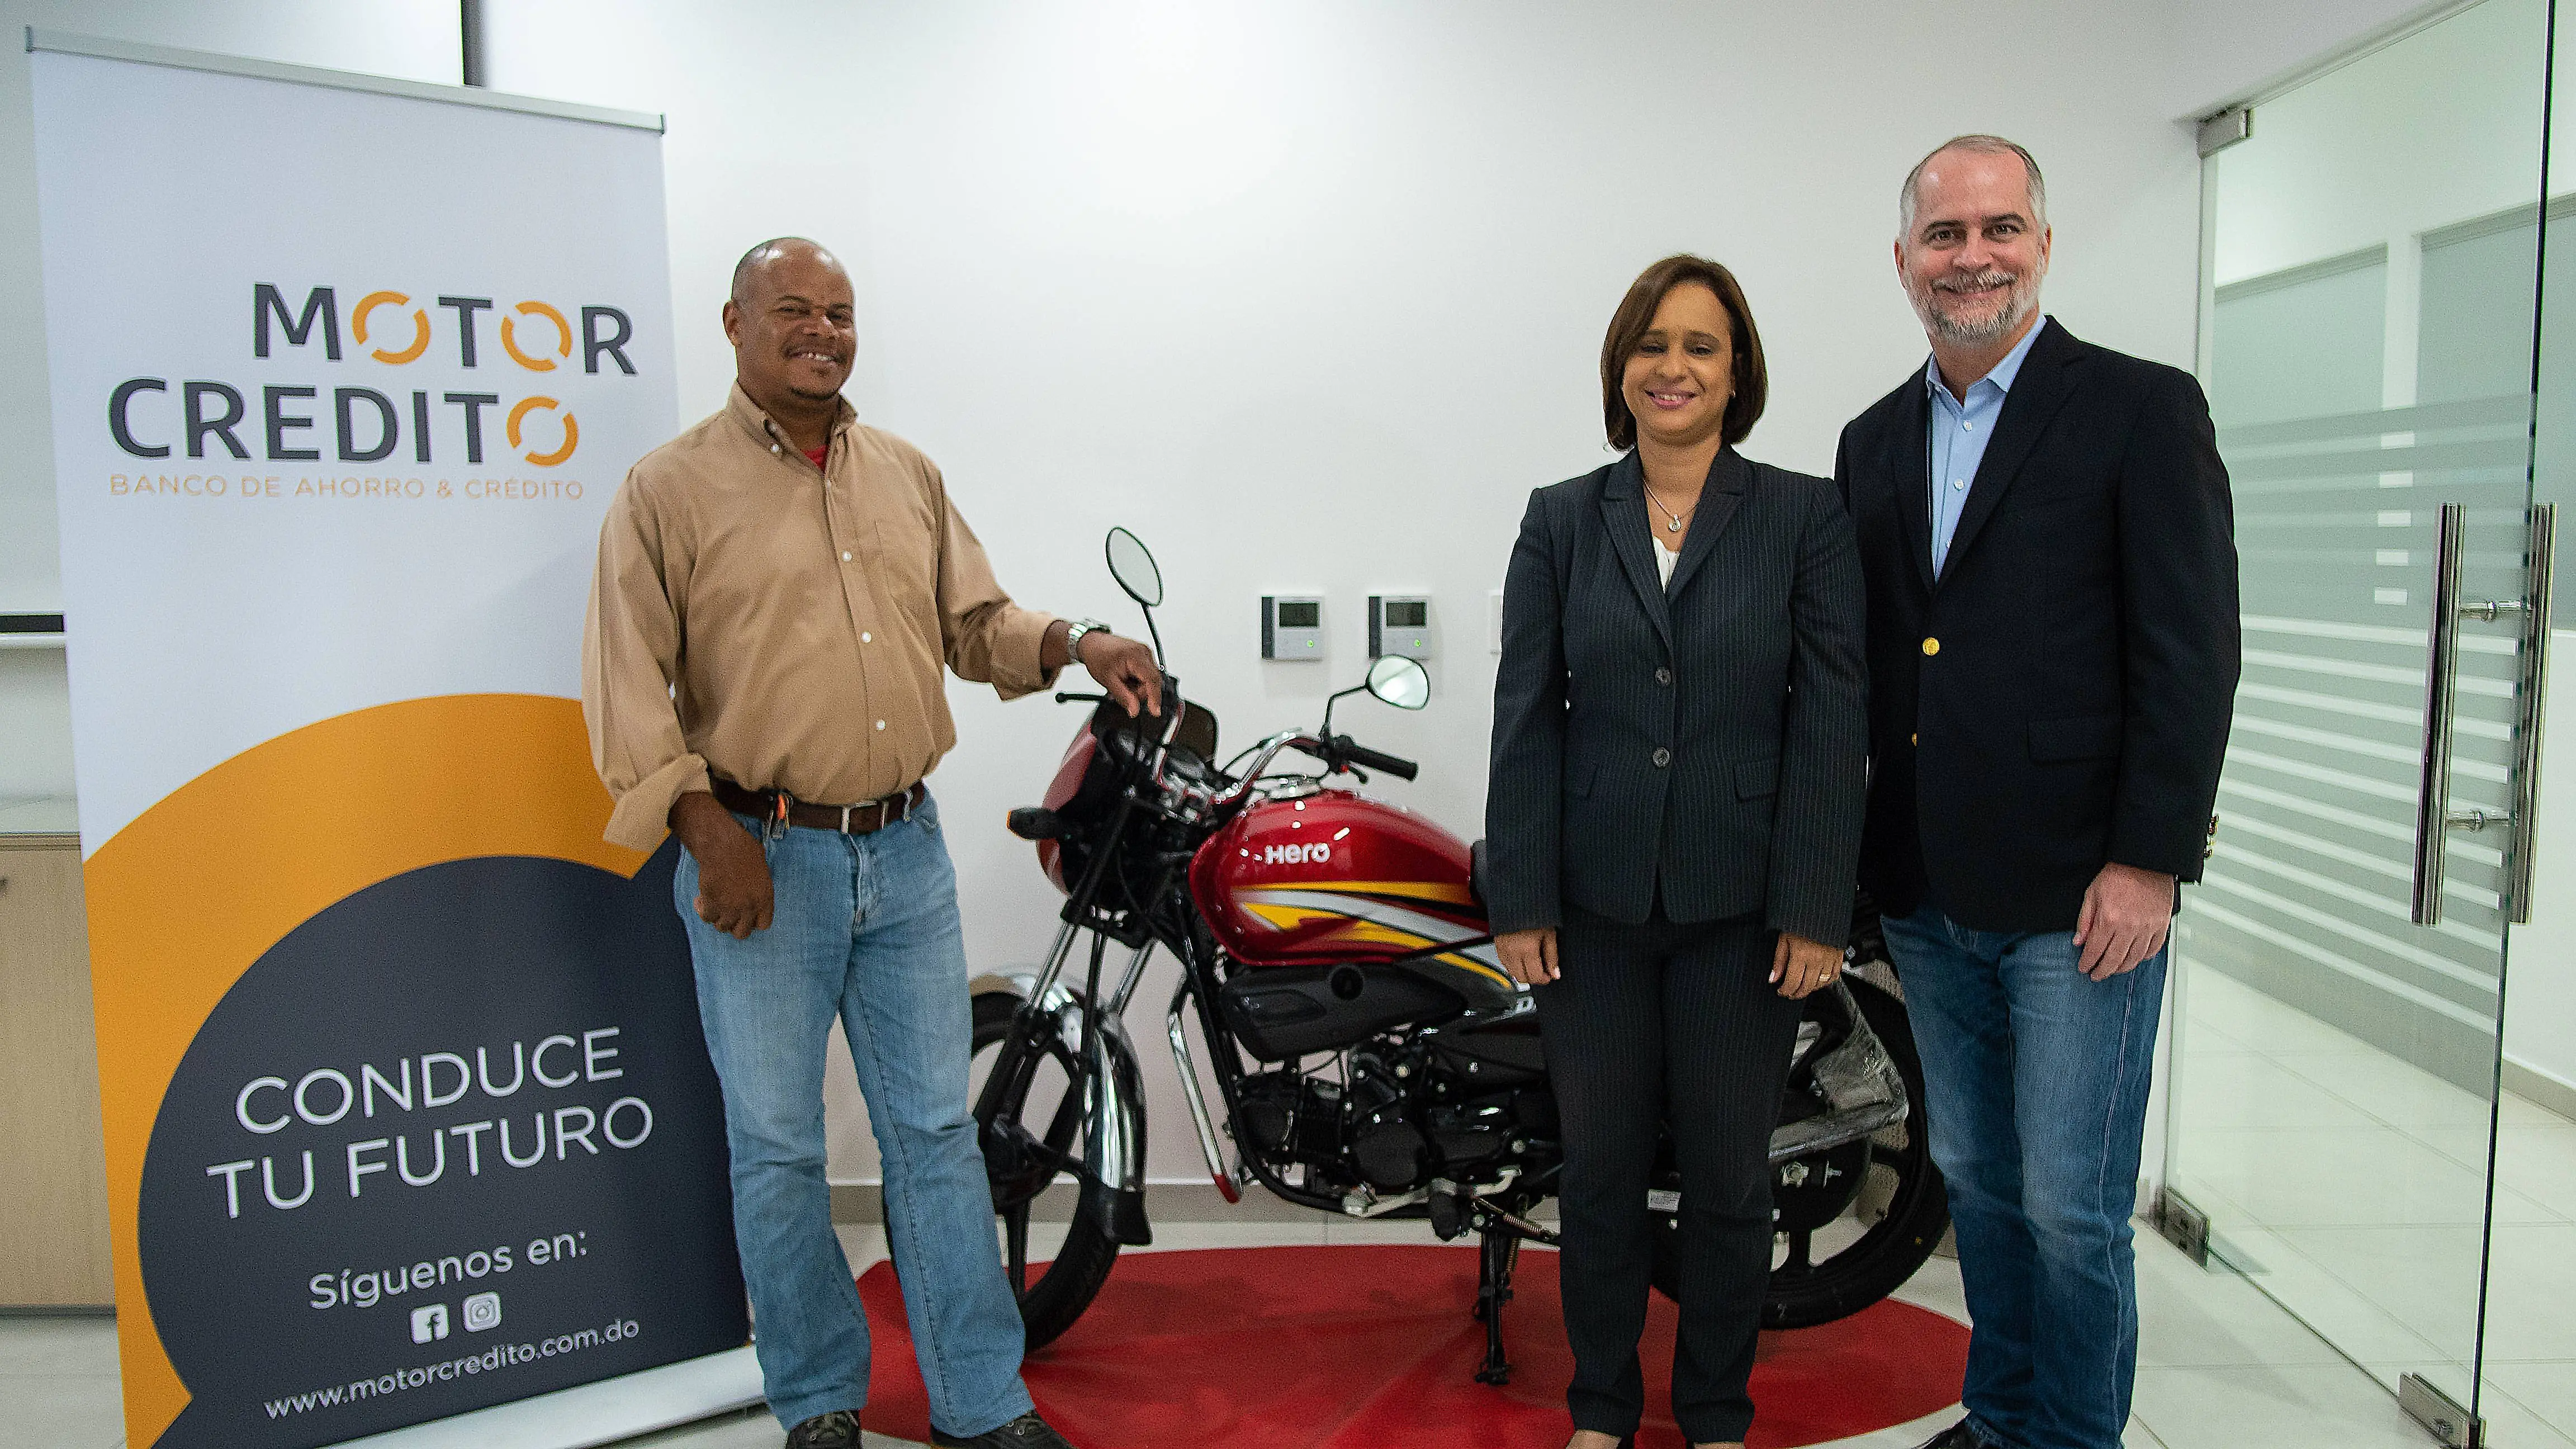 Motor Crédito imparte entrenamiento a motoconchistas para fomentar el manejo adecuado de sus finanzas